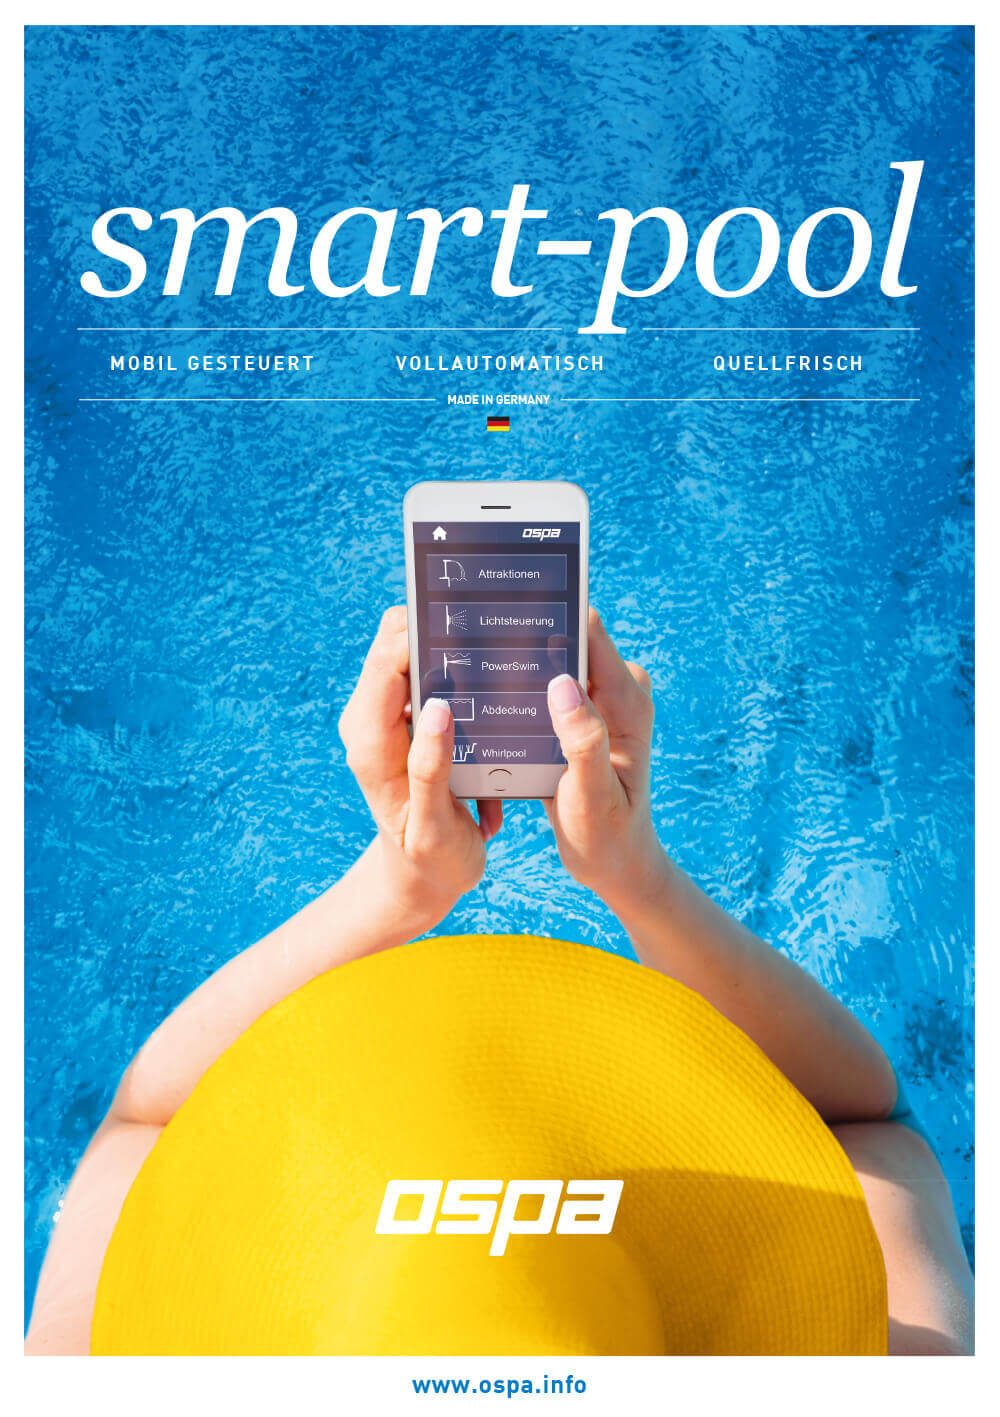 Ospa Anzeigenkampagne: Frau mit Sonnenhut, die vor einem Ospa-Pool sitzt und die Ospa-Anwendungen auf ihrem Handy bedient